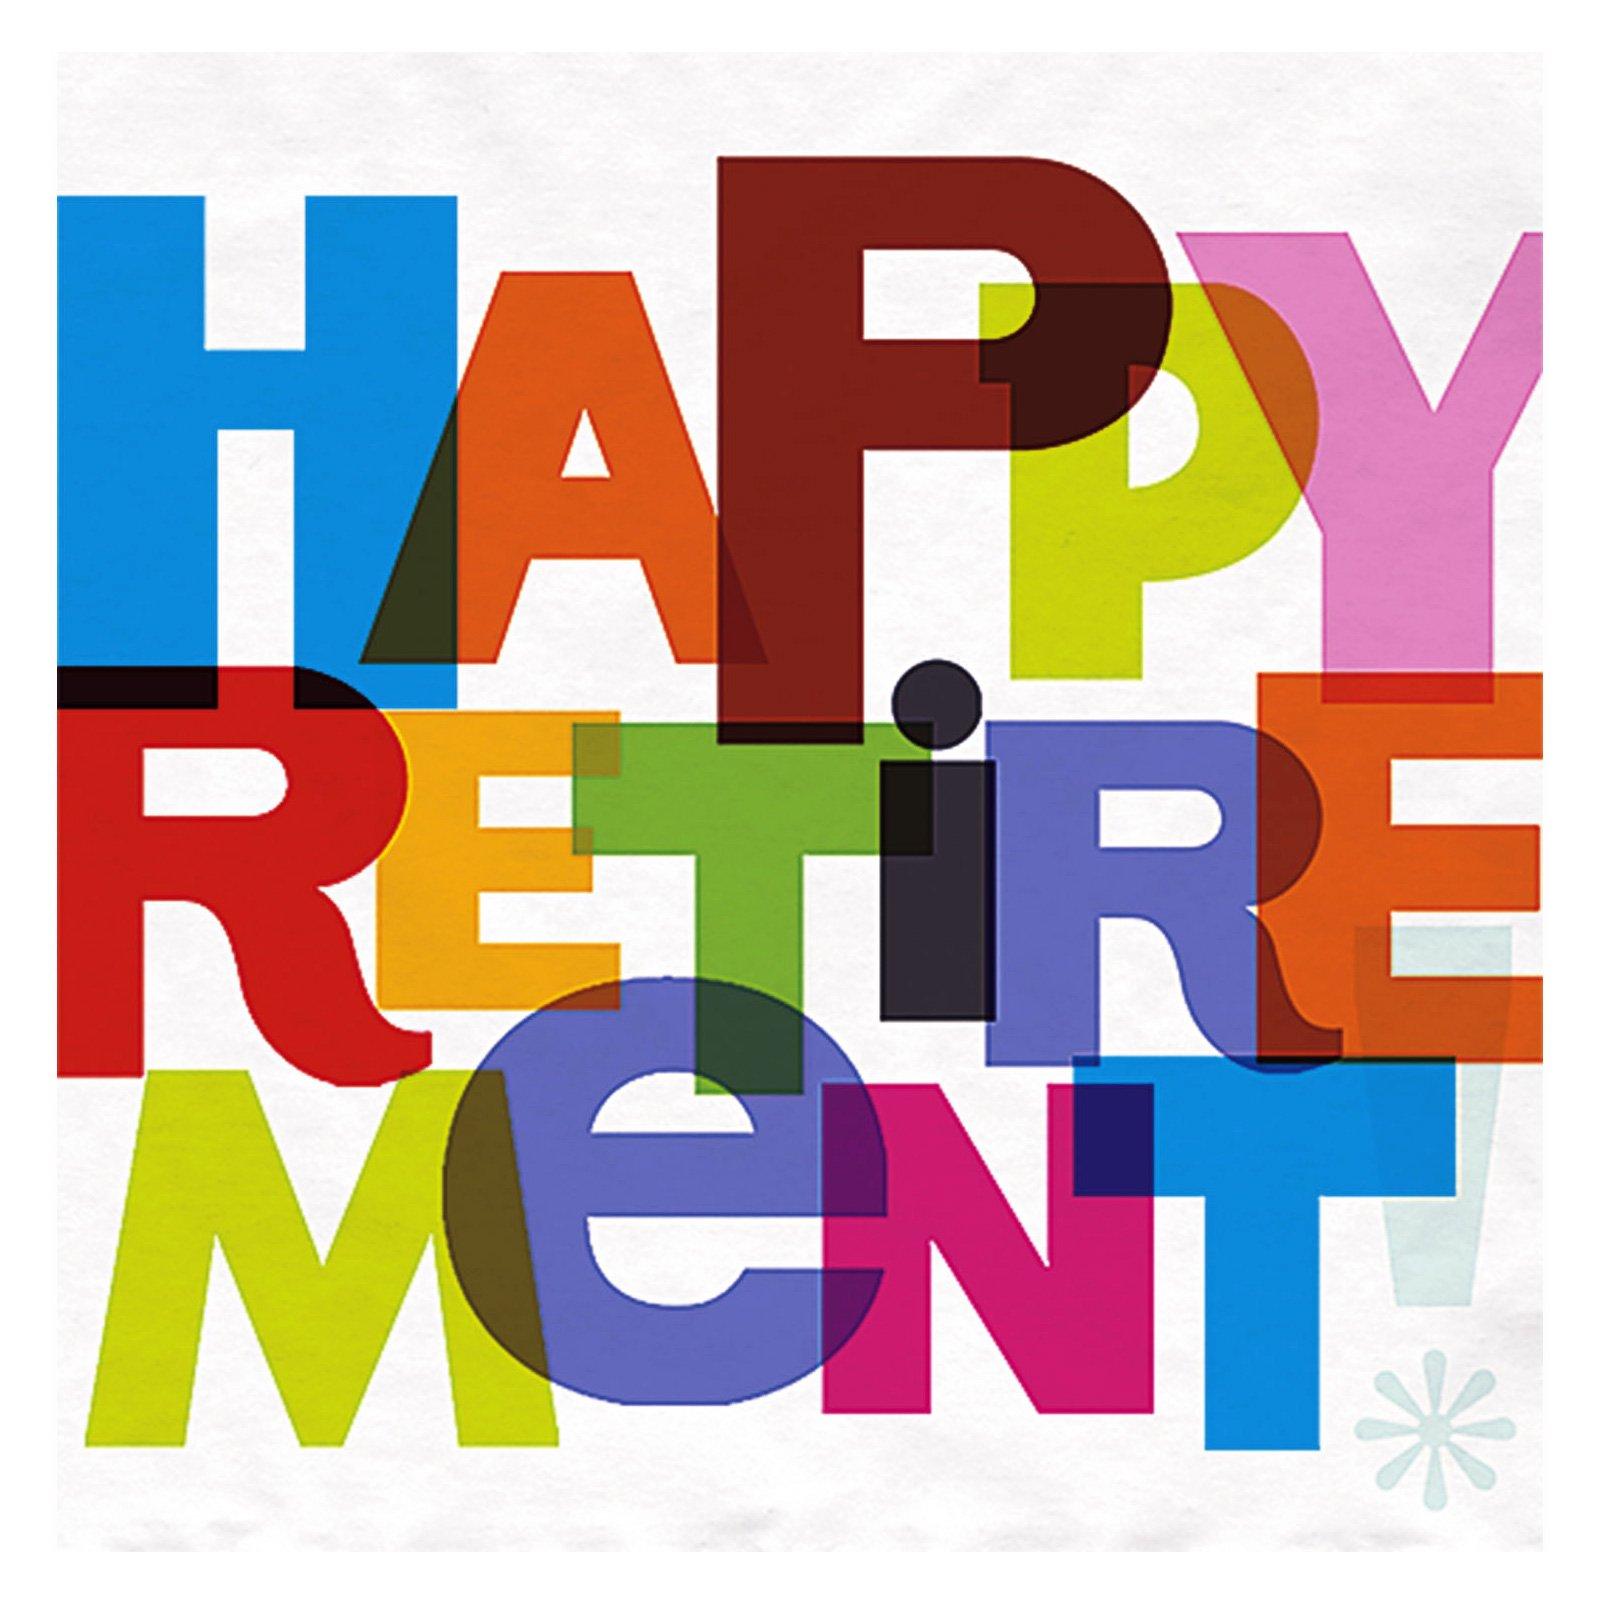 happy retirement clip art women